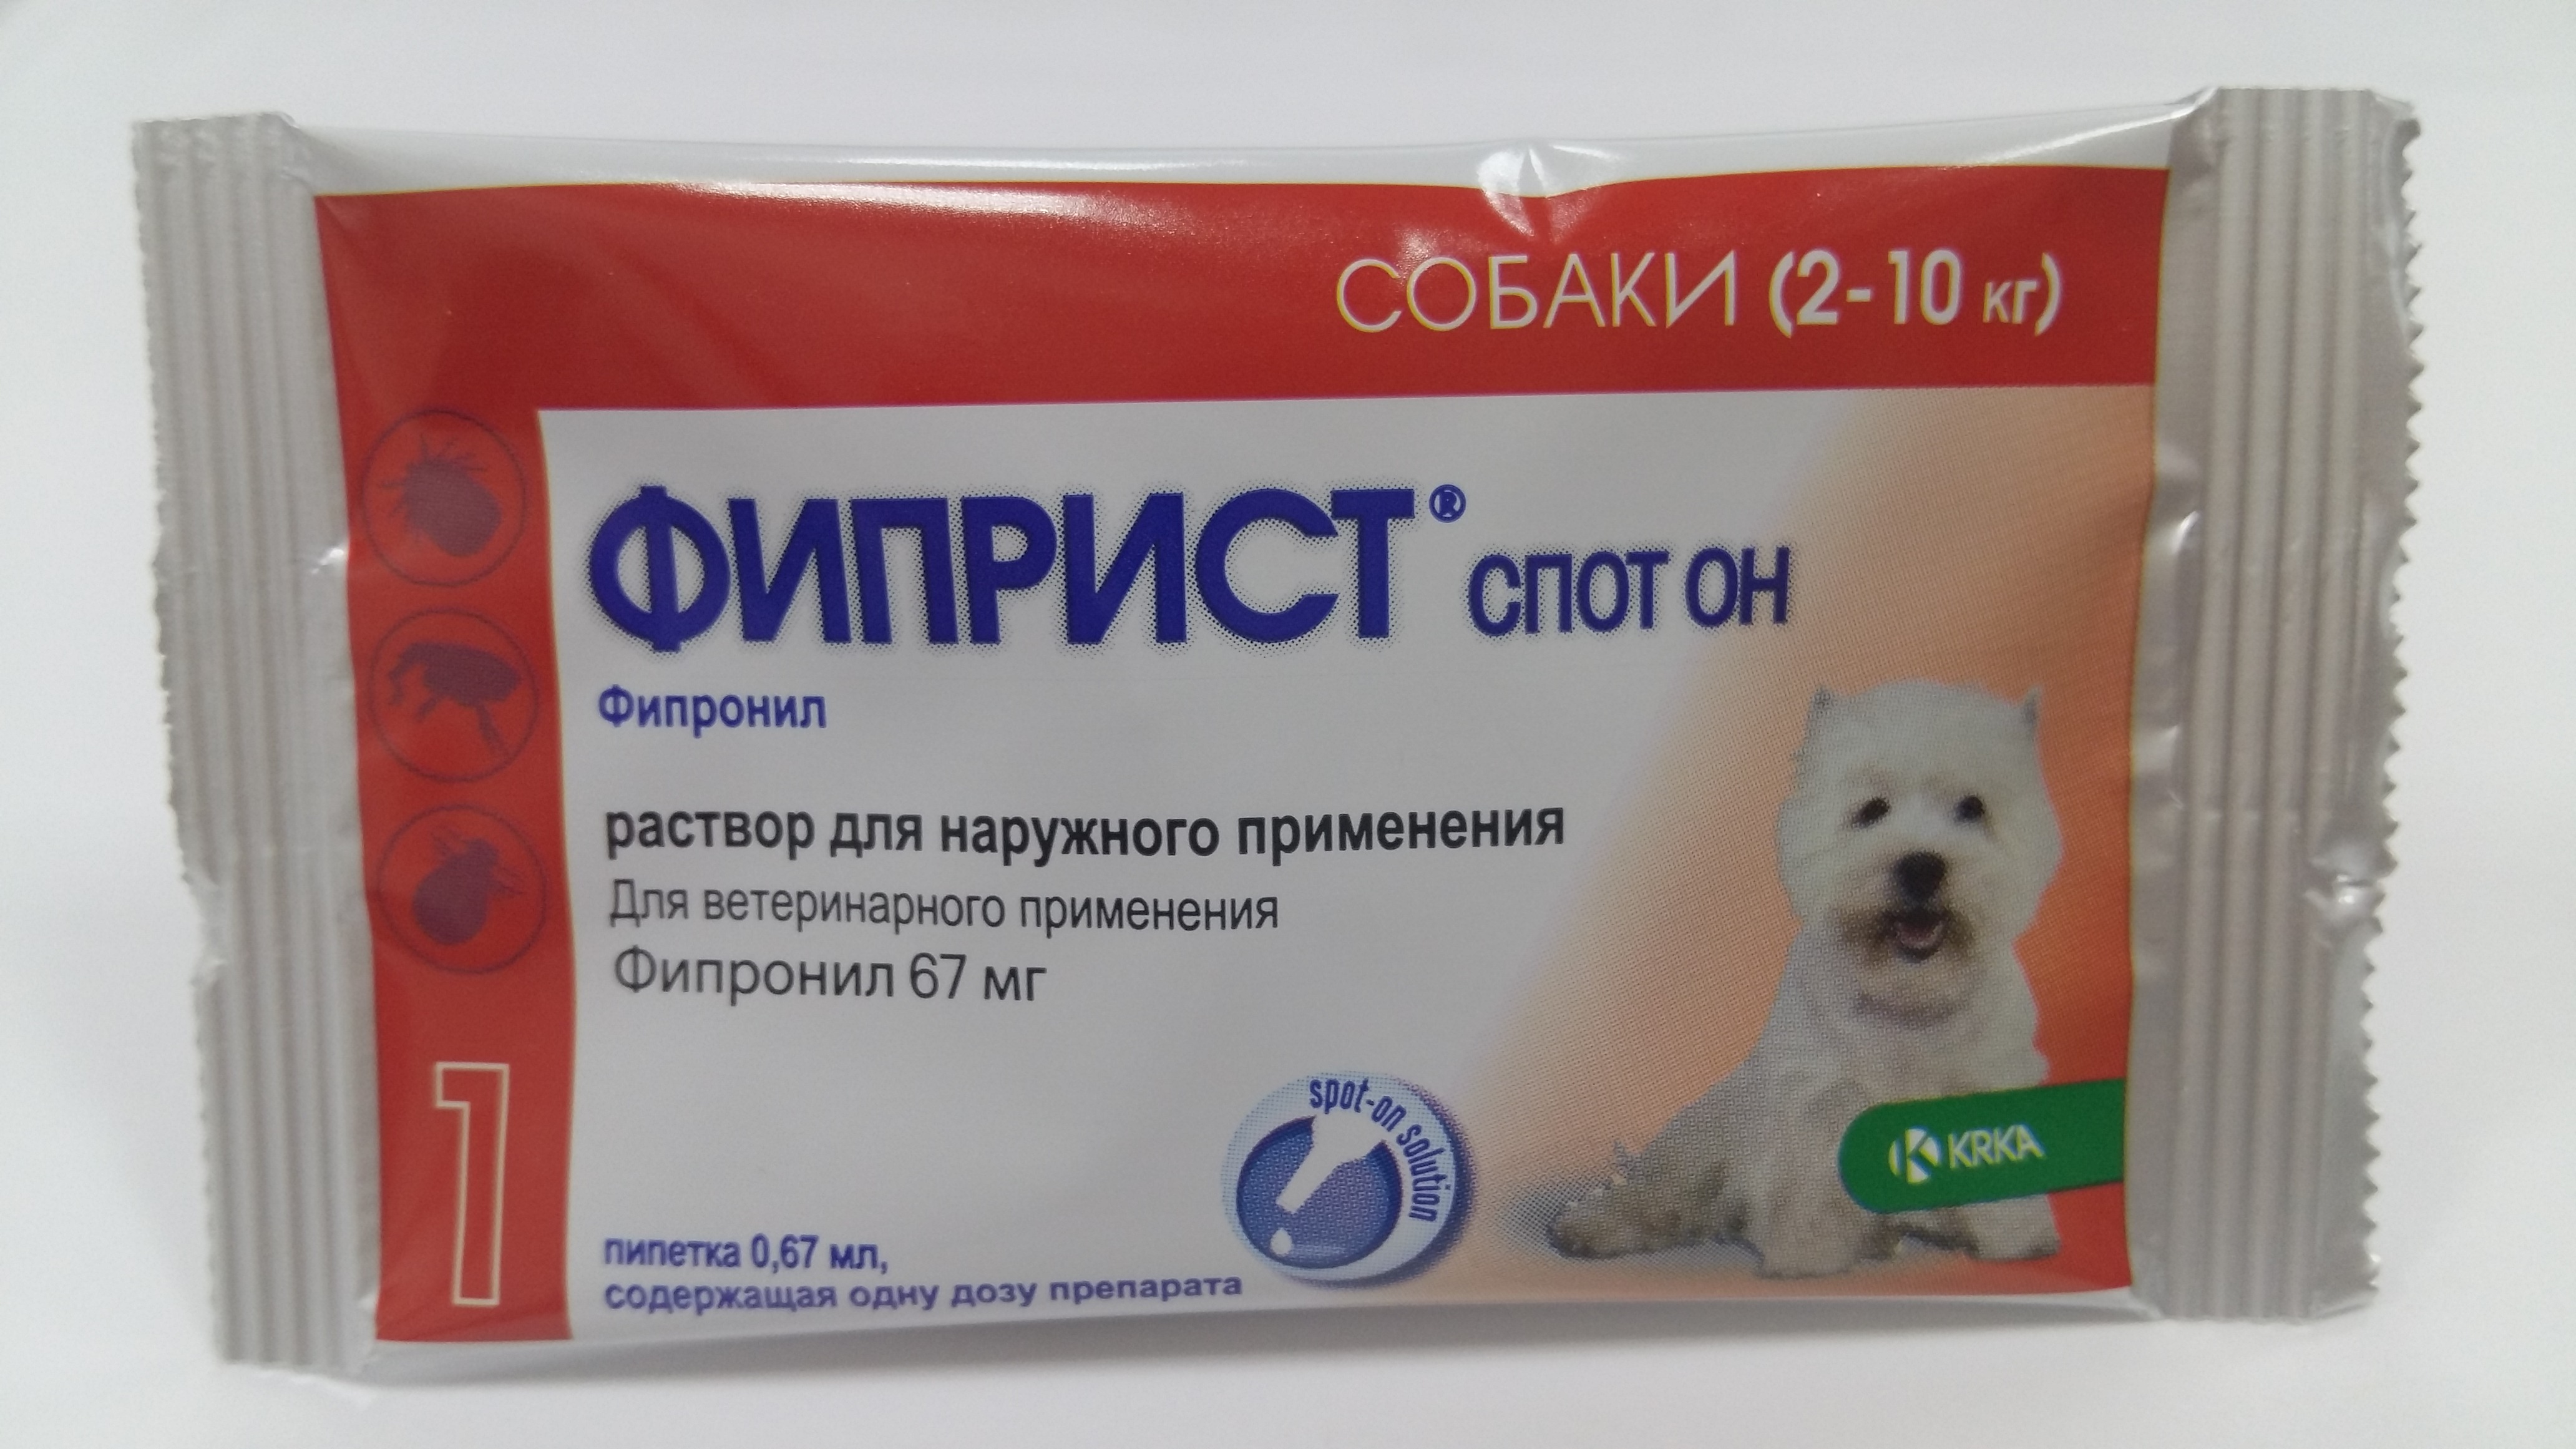 Купить фиприст спот он для собак 2-10кг 1 пипетка, krka в Самаре за 479 руб  в интернет-магазине